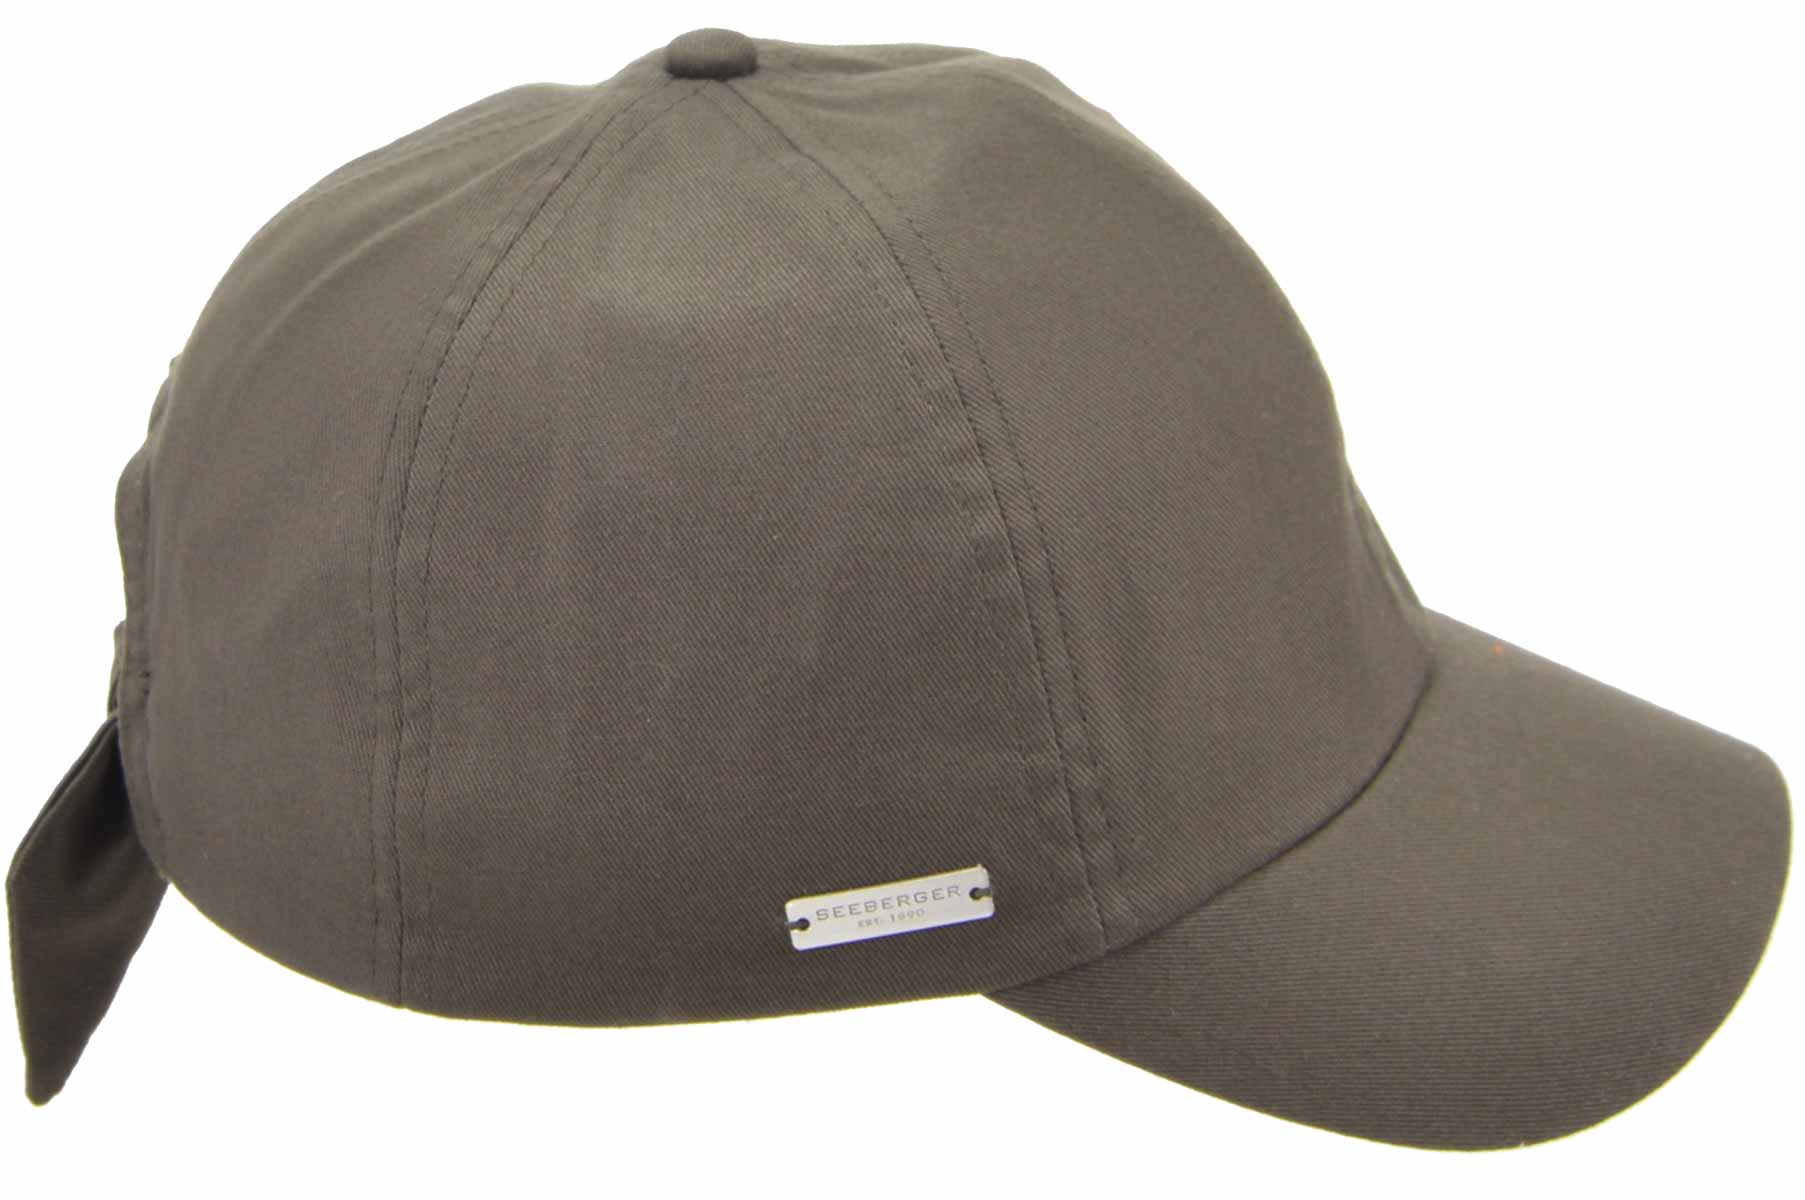 Unisex online »Baumwollmütze bei 55236-0« SEEBERGER Stoff Baseballcap SEEBERGER HATS kaufen Cap